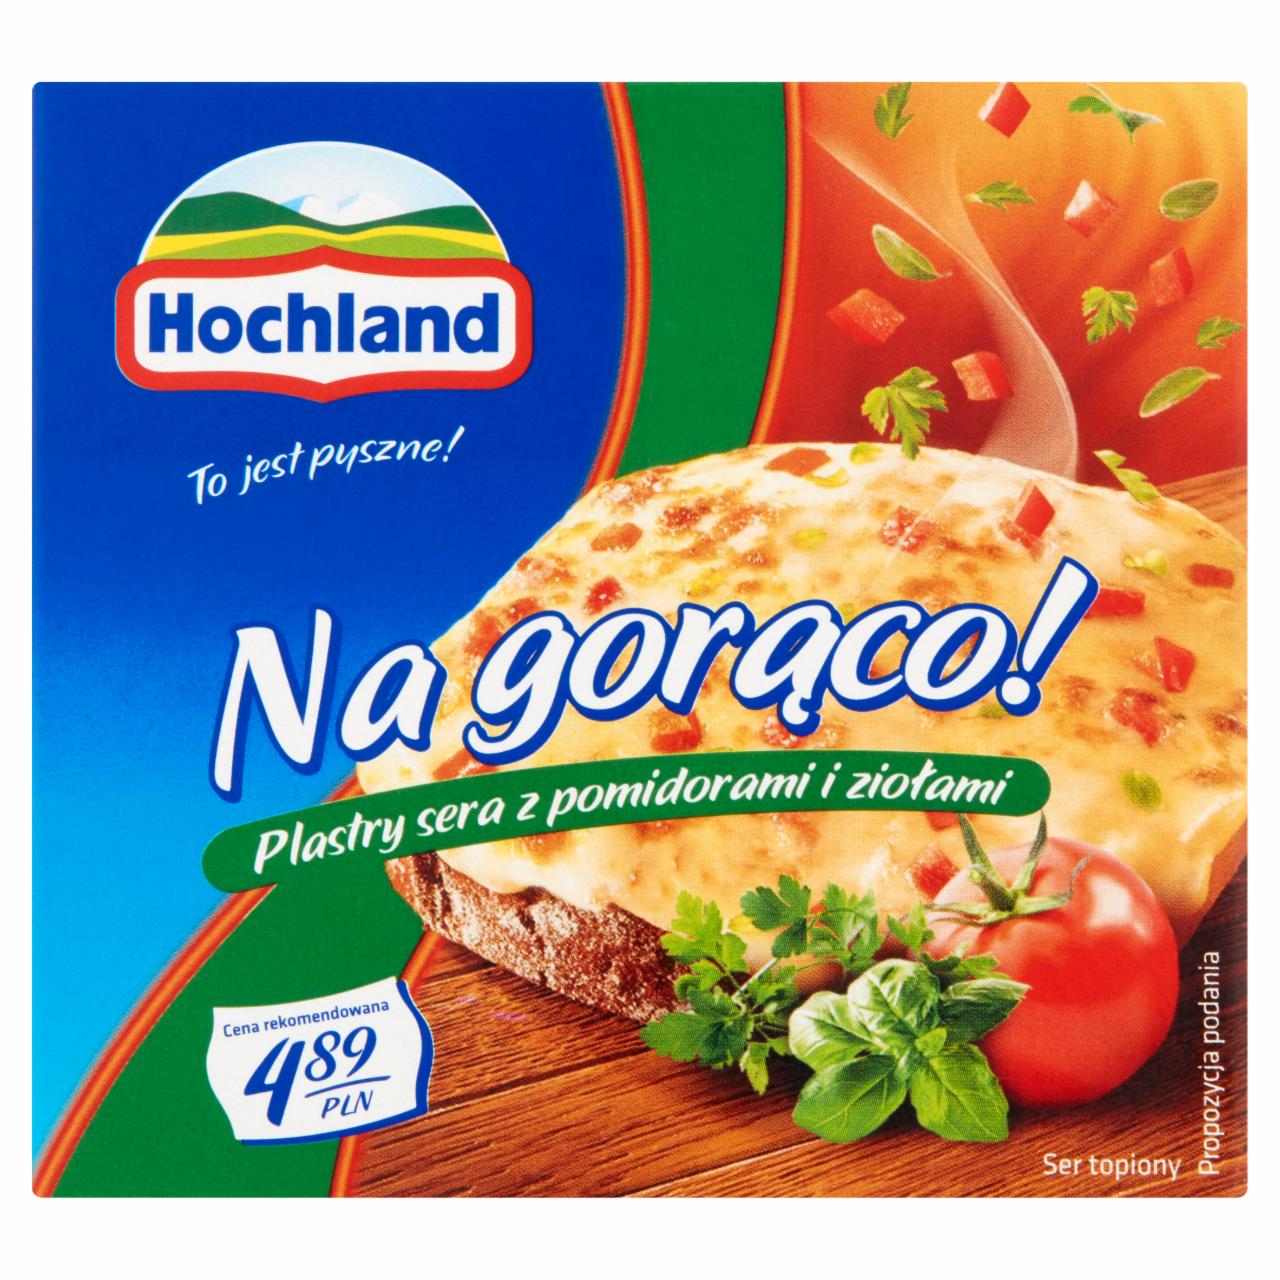 Zdjęcia - Hochland Na gorąco! Plastry sera z pomidorami i ziołami 144 g